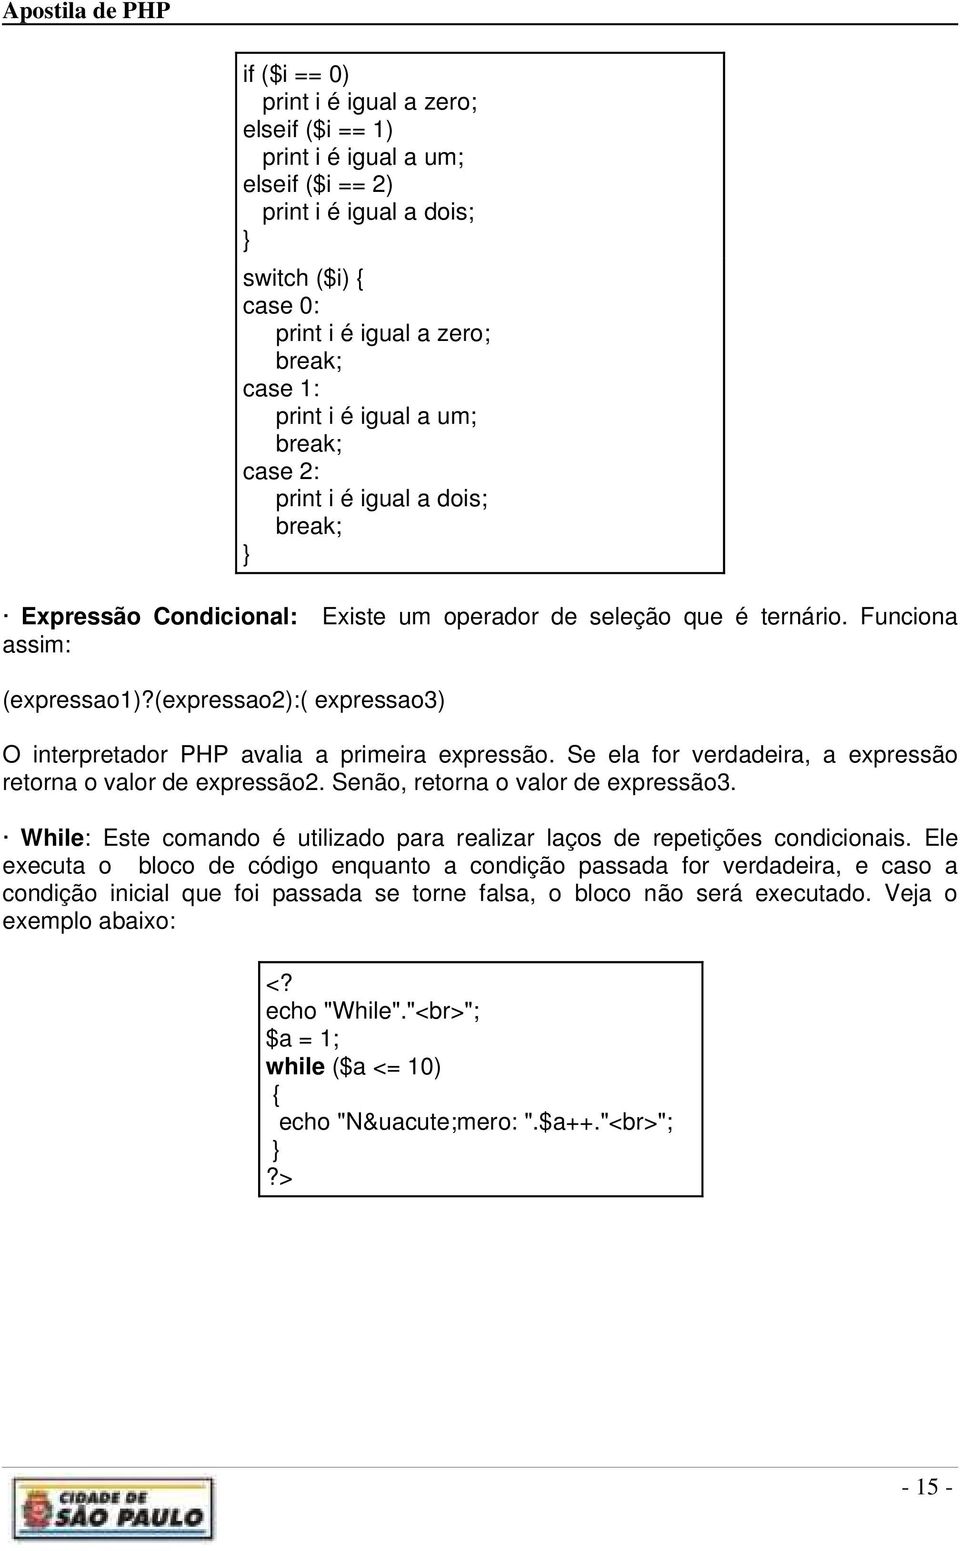 (expressao2):( expressao3) O interpretador PHP avalia a primeira expressão. Se ela for verdadeira, a expressão retorna o valor de expressão2. Senão, retorna o valor de expressão3.